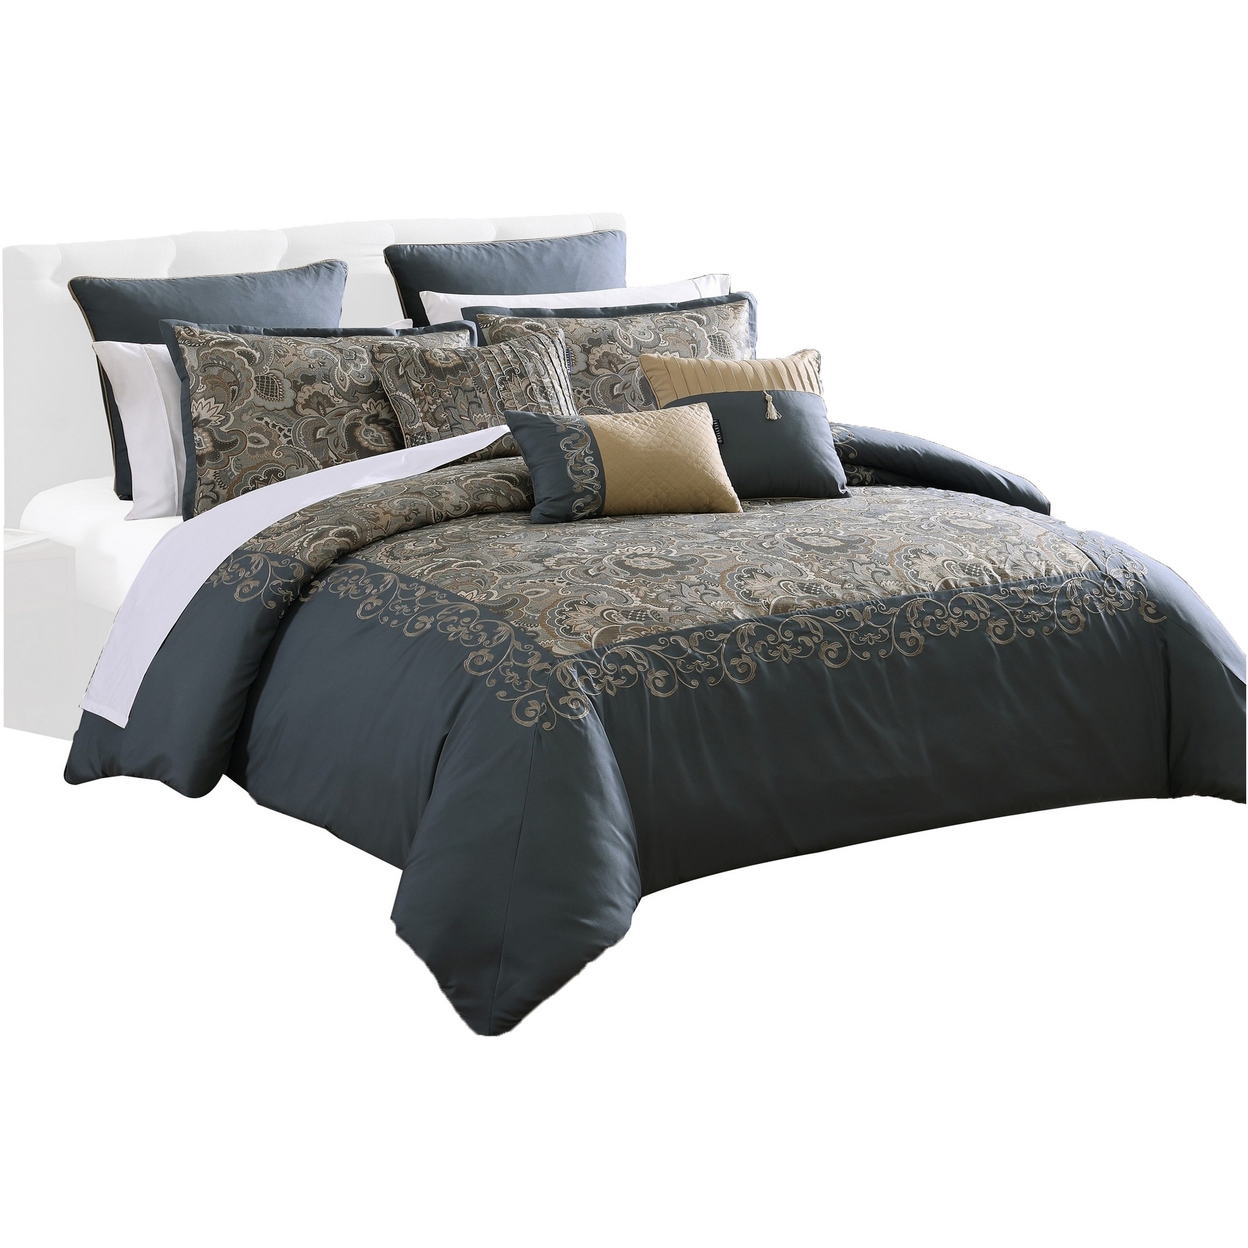 Zoe 10 Piece Queen Size Comforter Set, 3 Pillows, Bed Skirt, Blue, Gold - Saltoro Sherpi